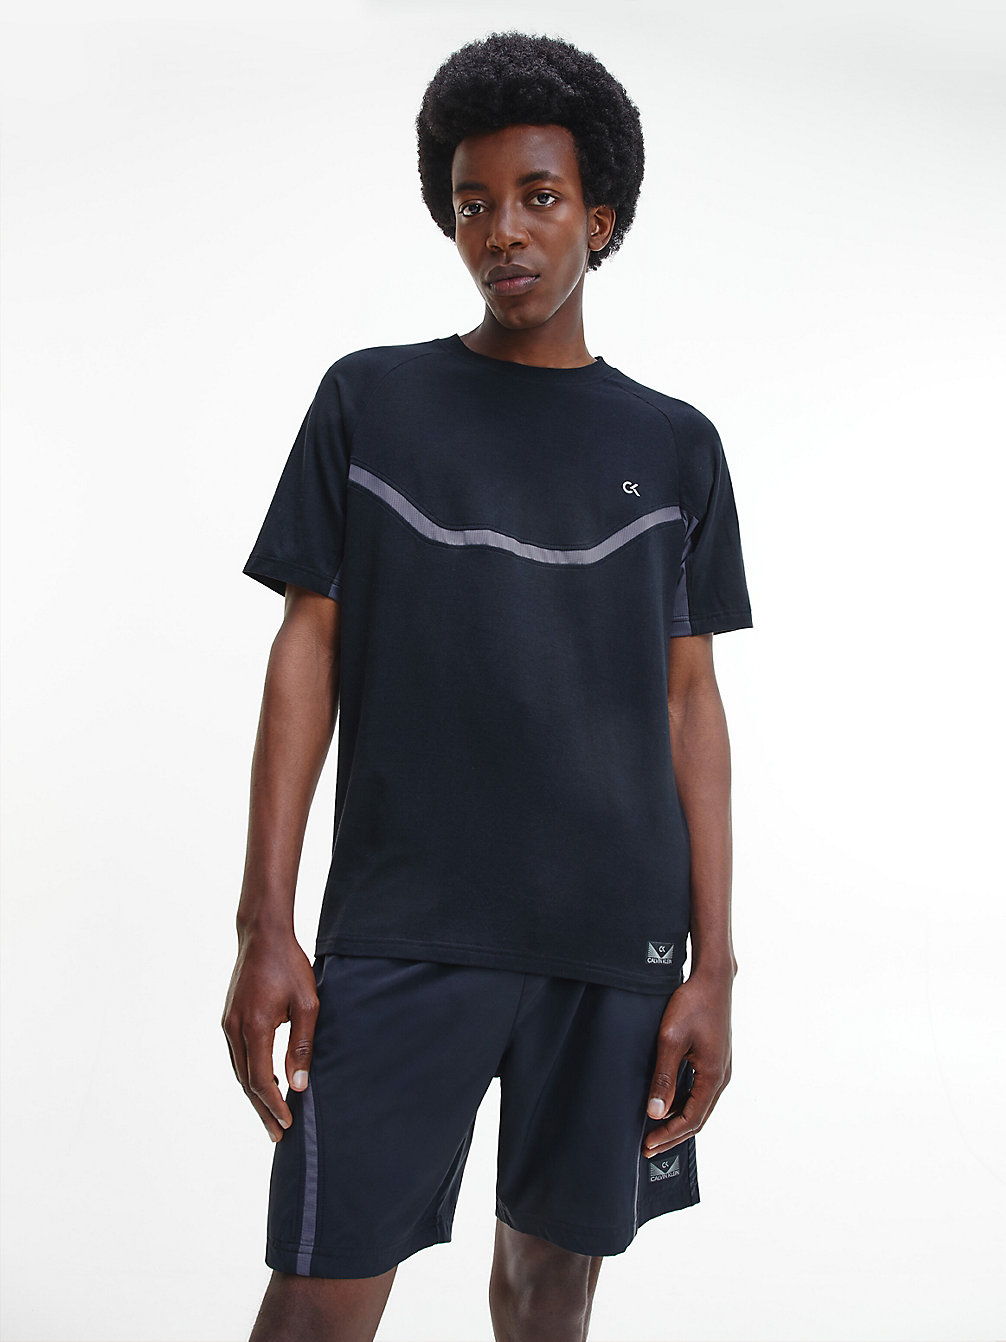 CK BLACK/ PERISCOPE/ACID LIME > T-Shirt Sportowy Z Przetworzonego Poliestru > undefined Mężczyźni - Calvin Klein